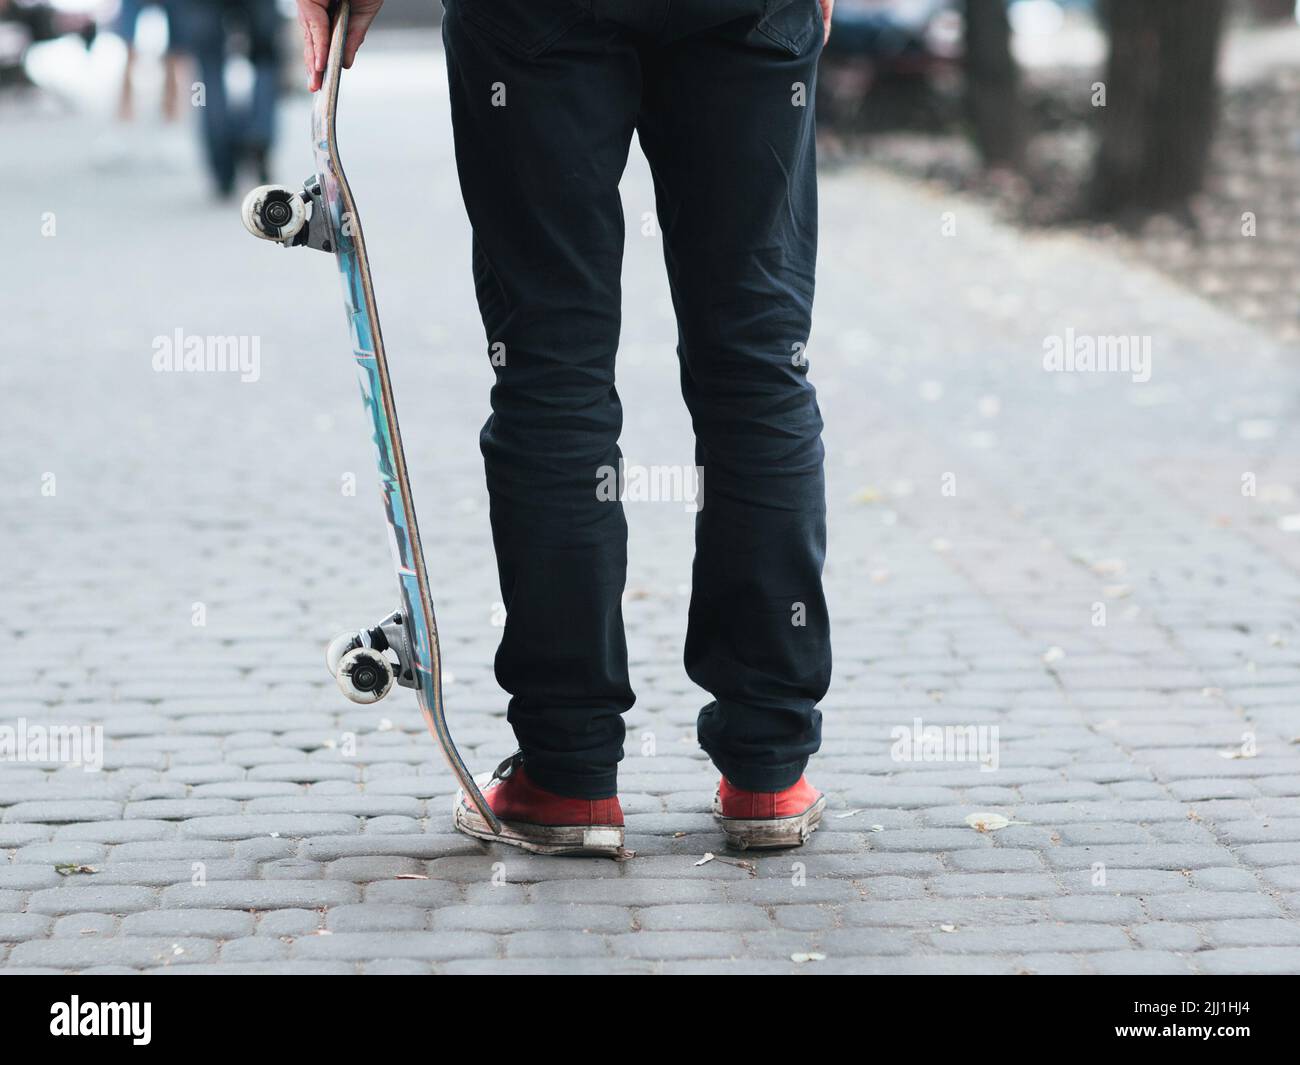 Skateboarder holding skate at street. Stock Photo